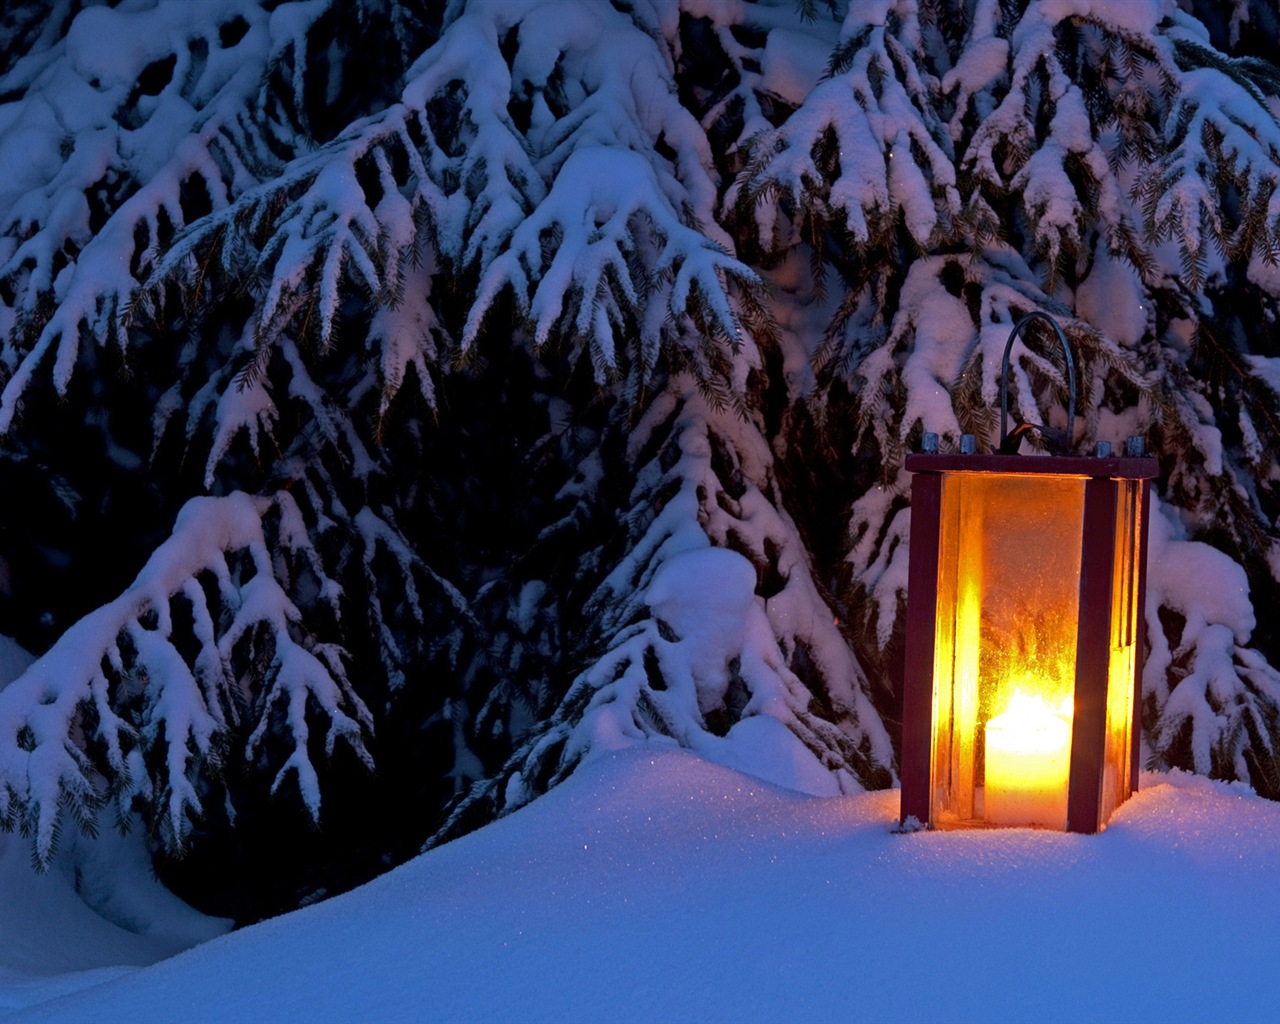 Windows 8 Theme HD Wallpapers: Nieve del invierno noche #2 - 1280x1024